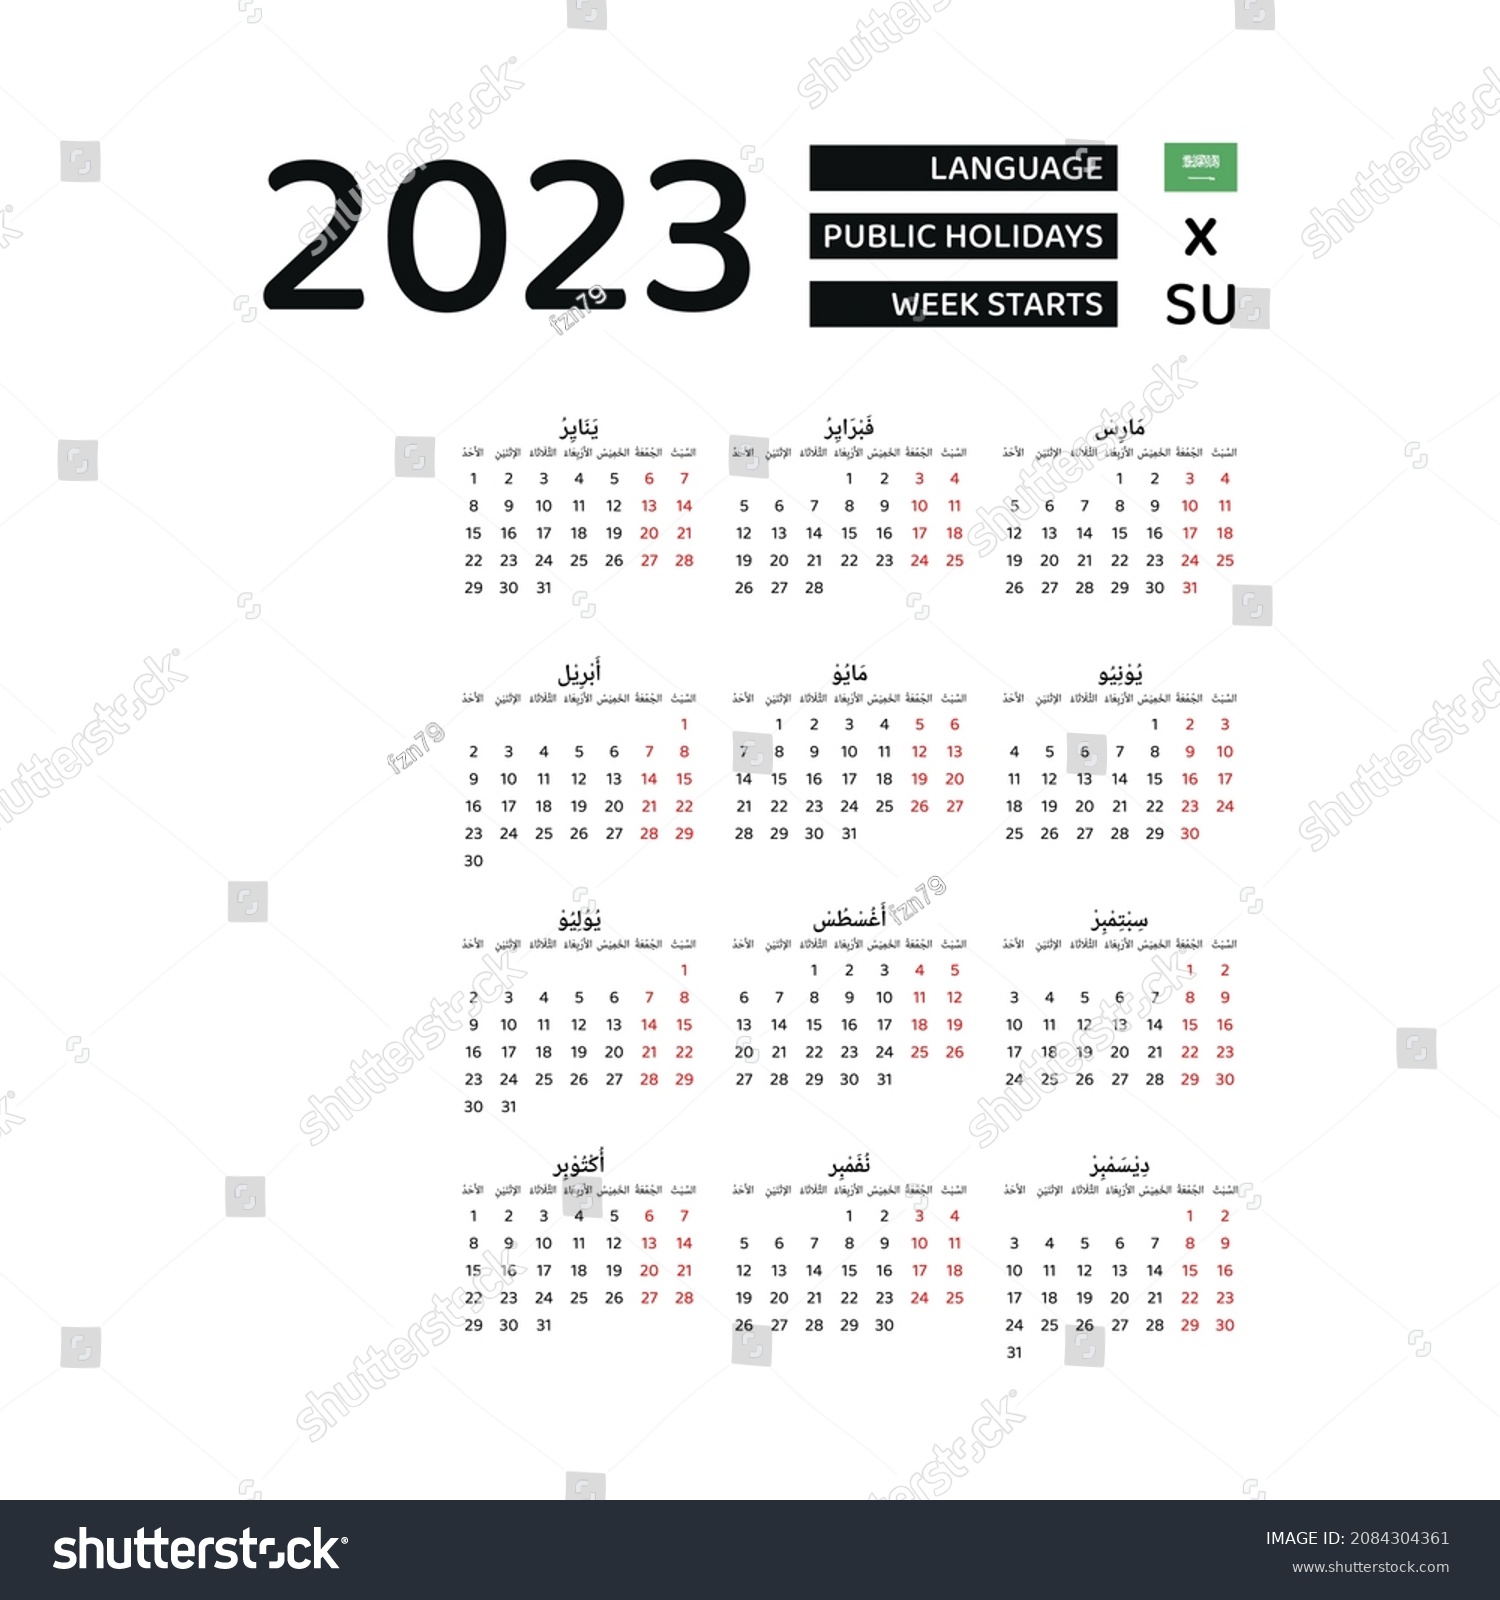 saudi-arabia-calendar-2023-week-starts-vector-c-s-n-mi-n-ph-b-n-quy-n-2084304361-shutterstock